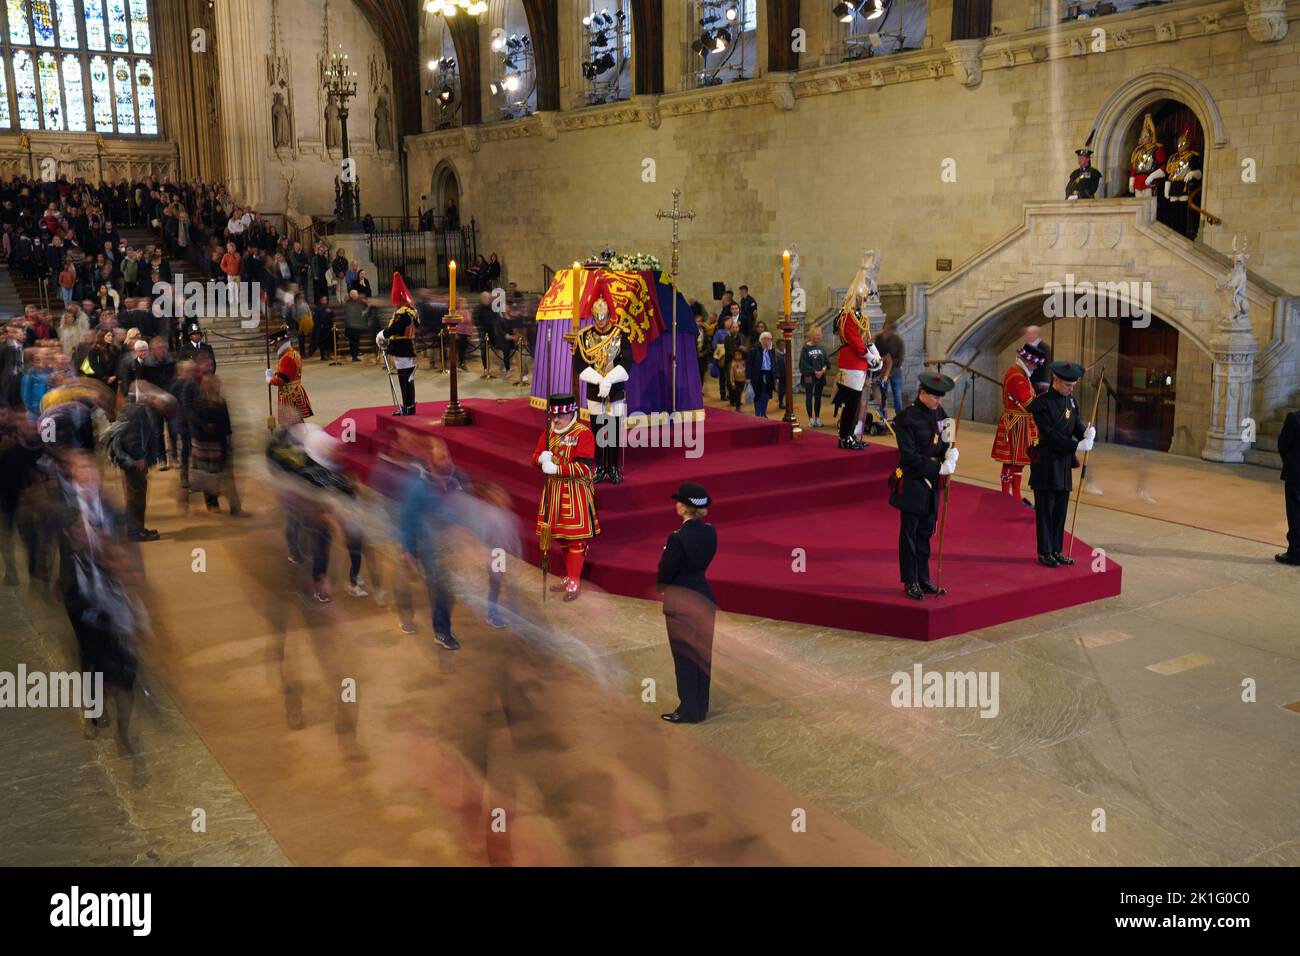 Los miembros del público ven el ataúd de la Reina Isabel II, que se encuentra en el estado en la catafalque de Westminster Hall, en el Palacio de Westminster, Londres, antes de su funeral el lunes. Fecha de la foto: Domingo 18 de septiembre de 2022. Foto de stock